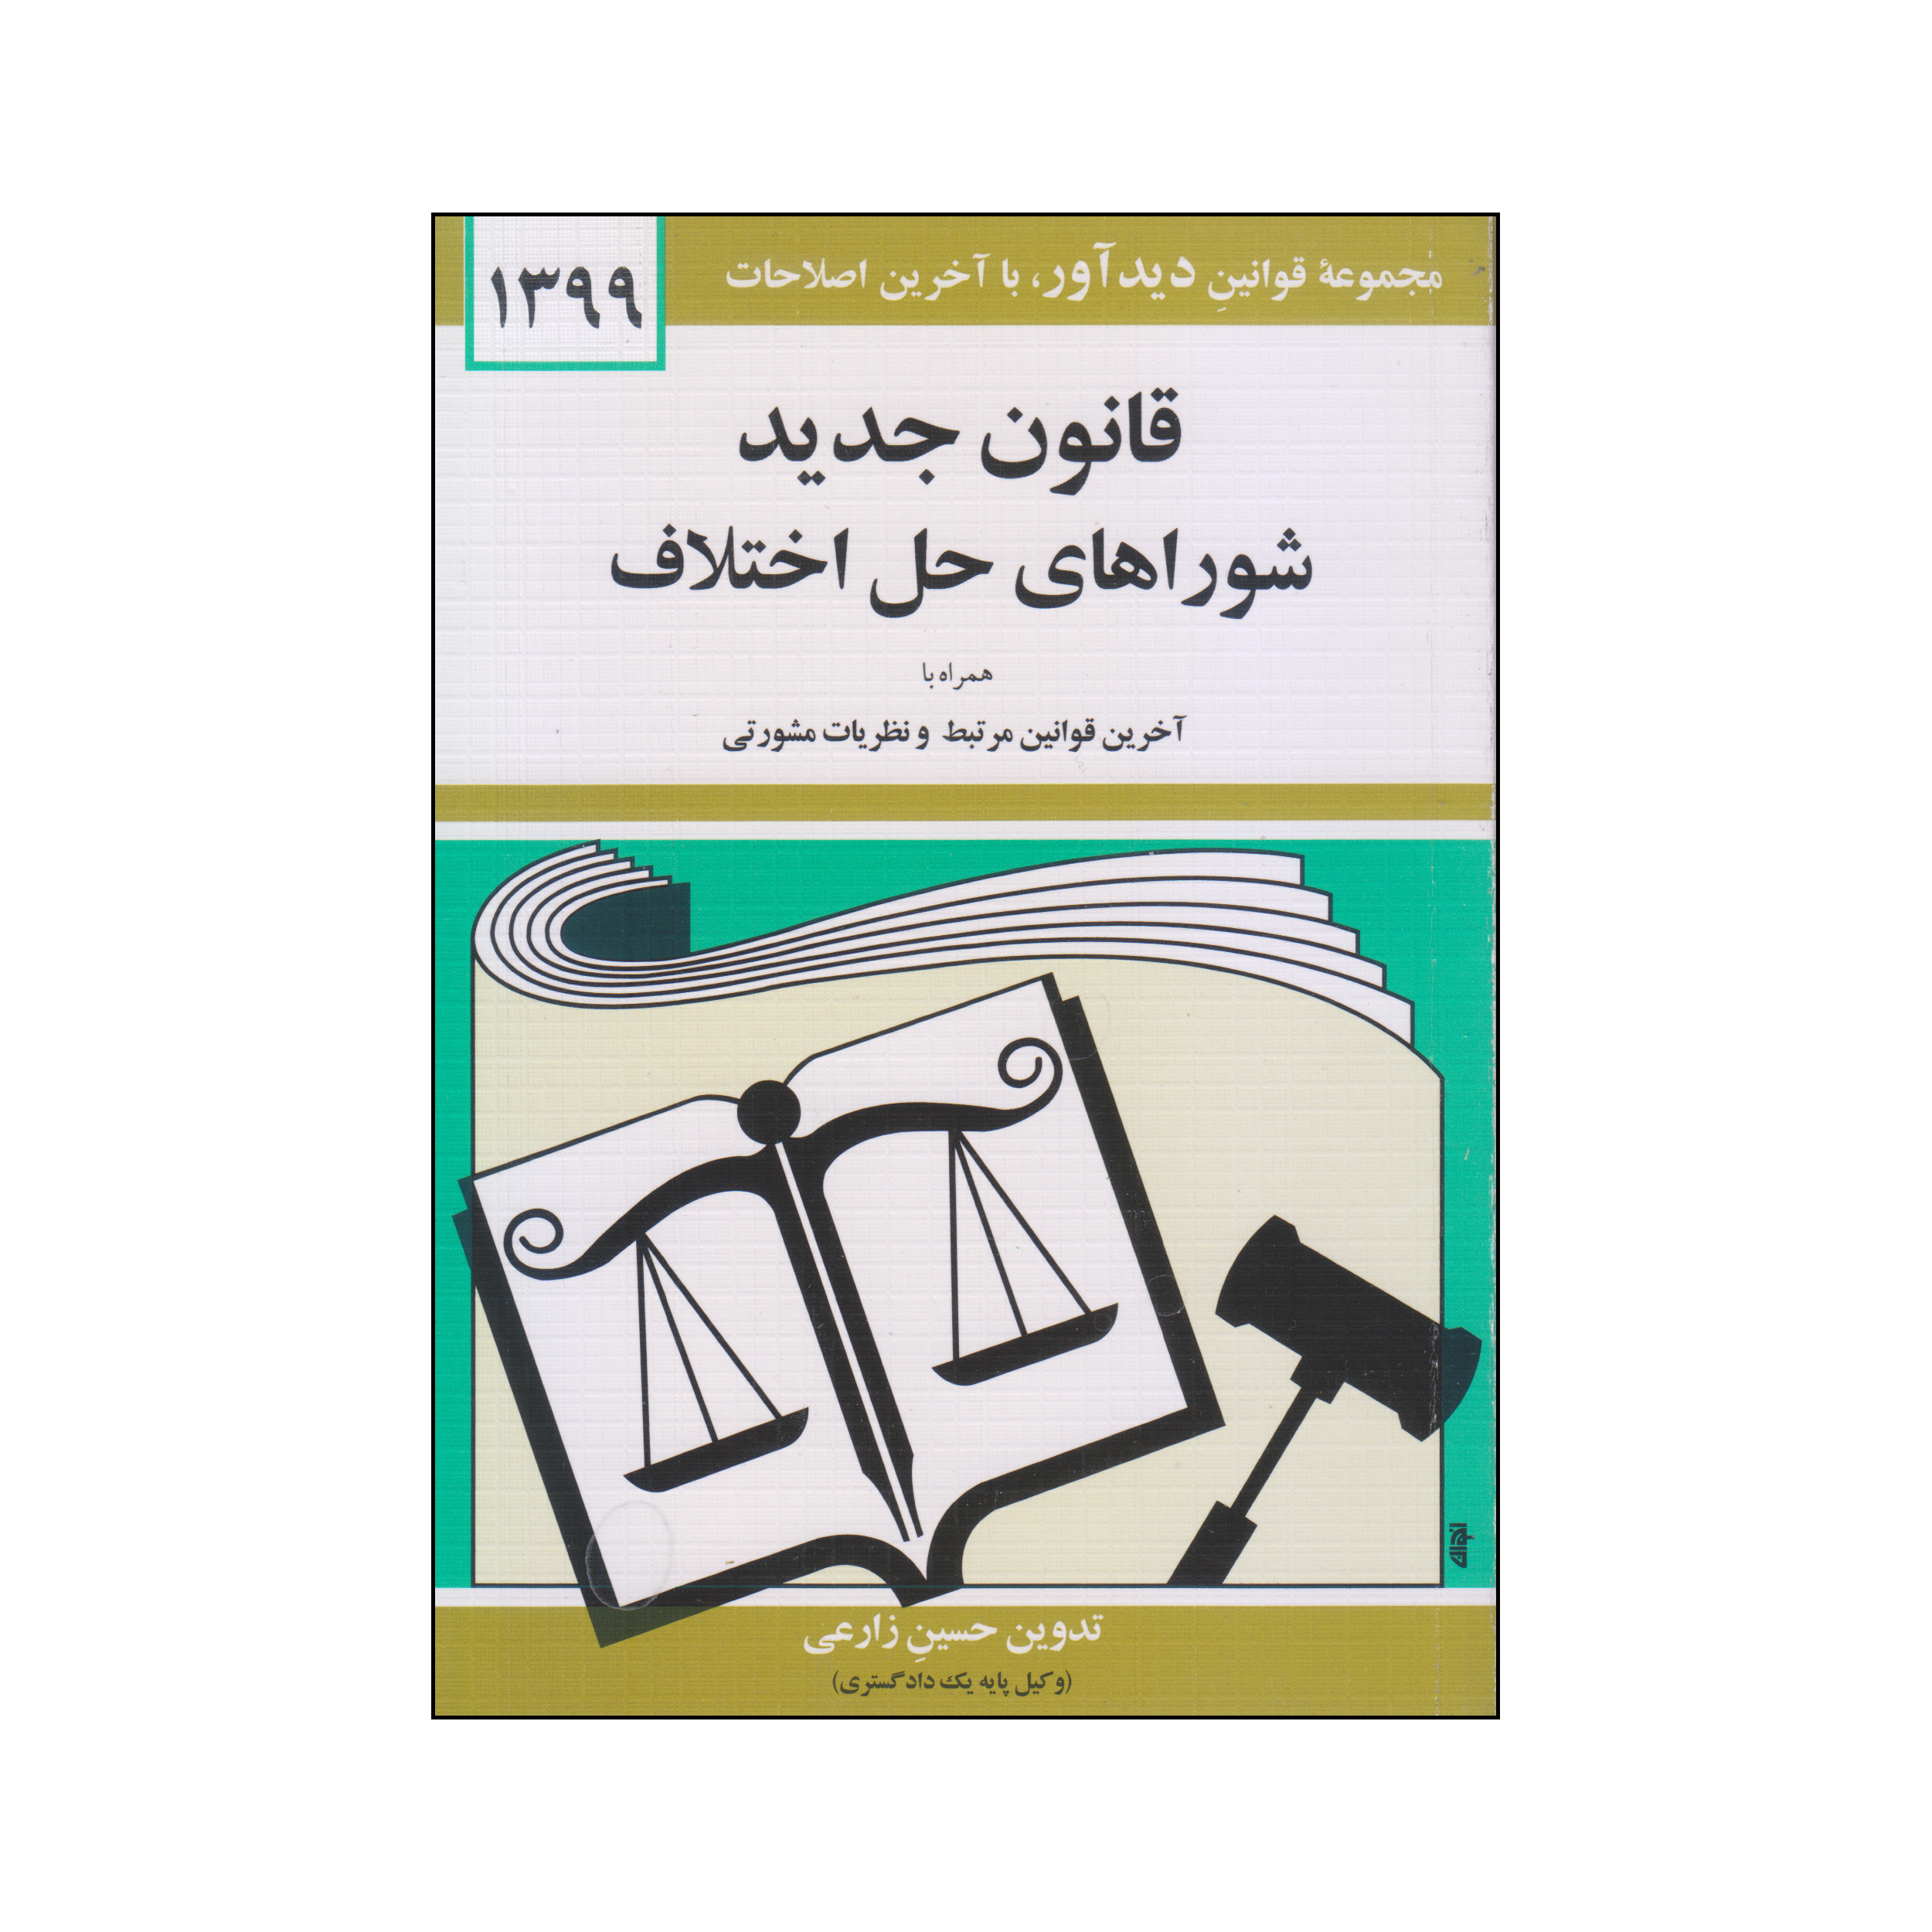 کتاب قانون جدید شوراهای حل اختلاف 1399 اثر جهانگیر منصور نشر دوران